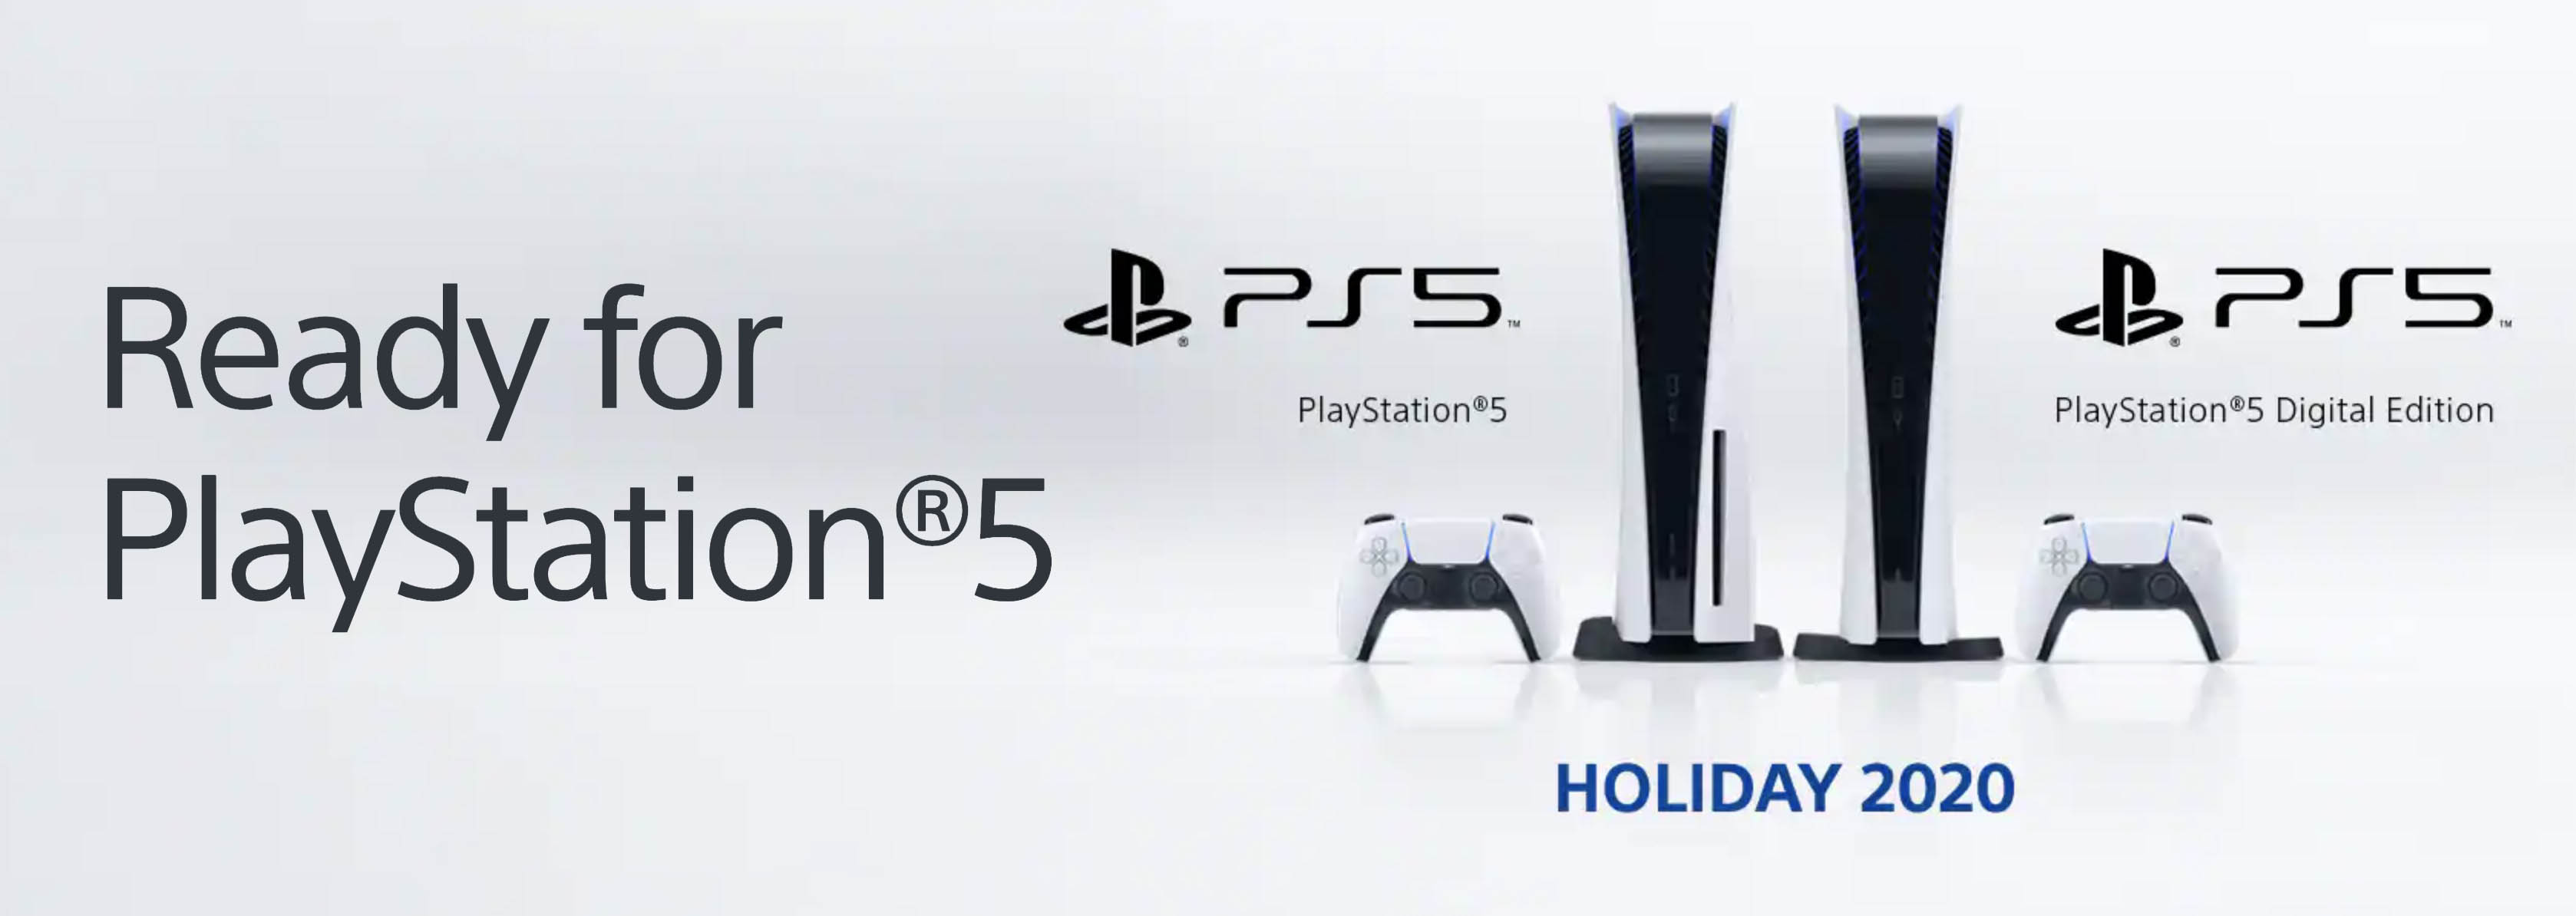 Sony công bố chiến dịch “Ready For Playstation 5” cùng các dòng TV Bravia 2020